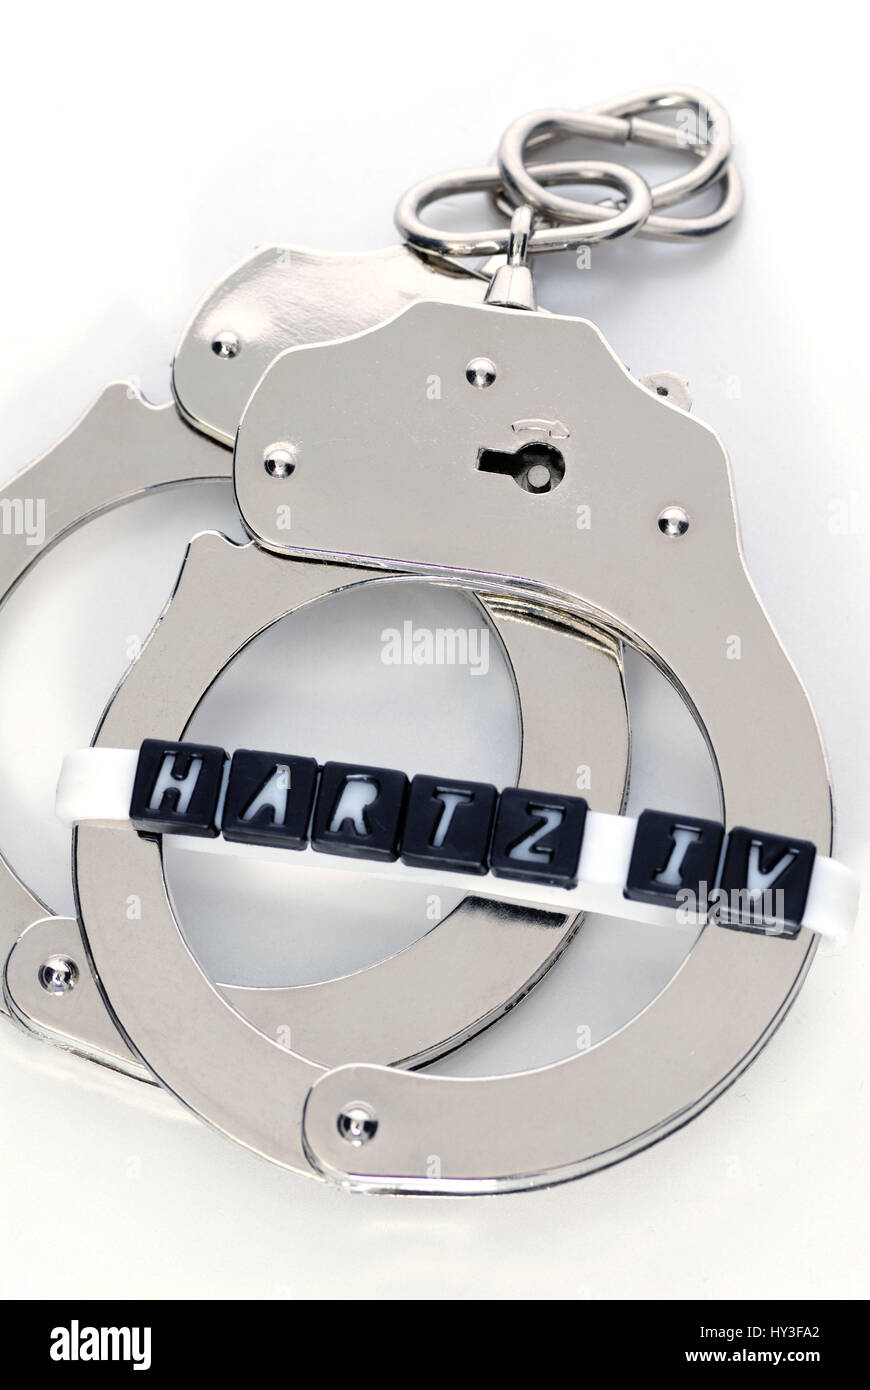 Handcuffs and Hartz IV stroke, working duty for Hartz IV receiver, Handschellen und Hartz IV-Schriftzug, Arbeitspflicht für Hartz IV-Empfänger Stock Photo